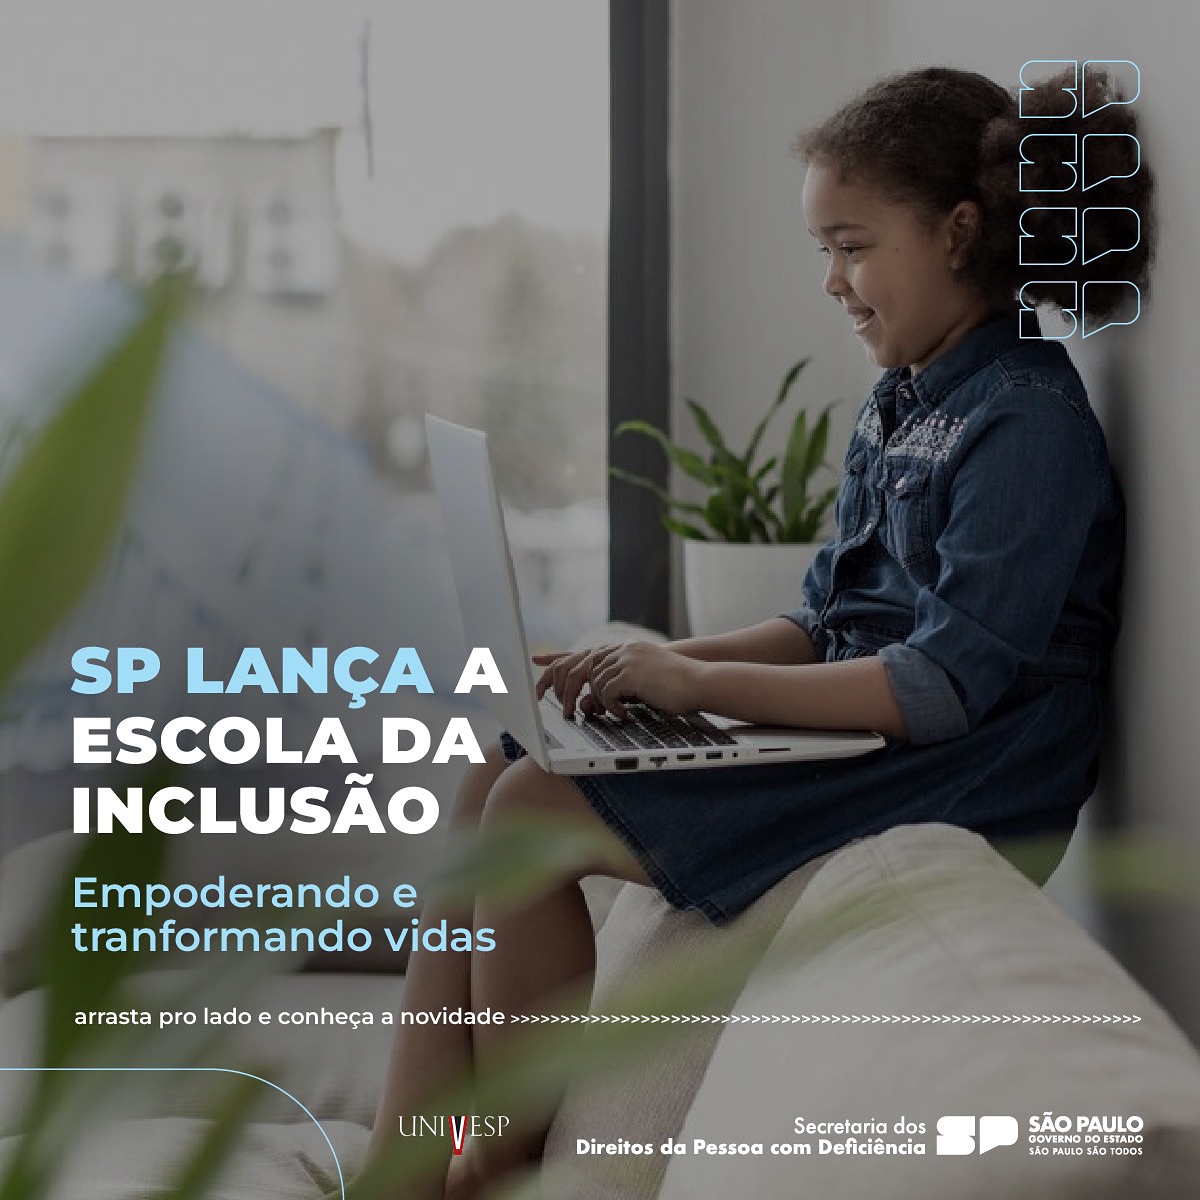 Governo de SP lança projeto Escola da Inclusão